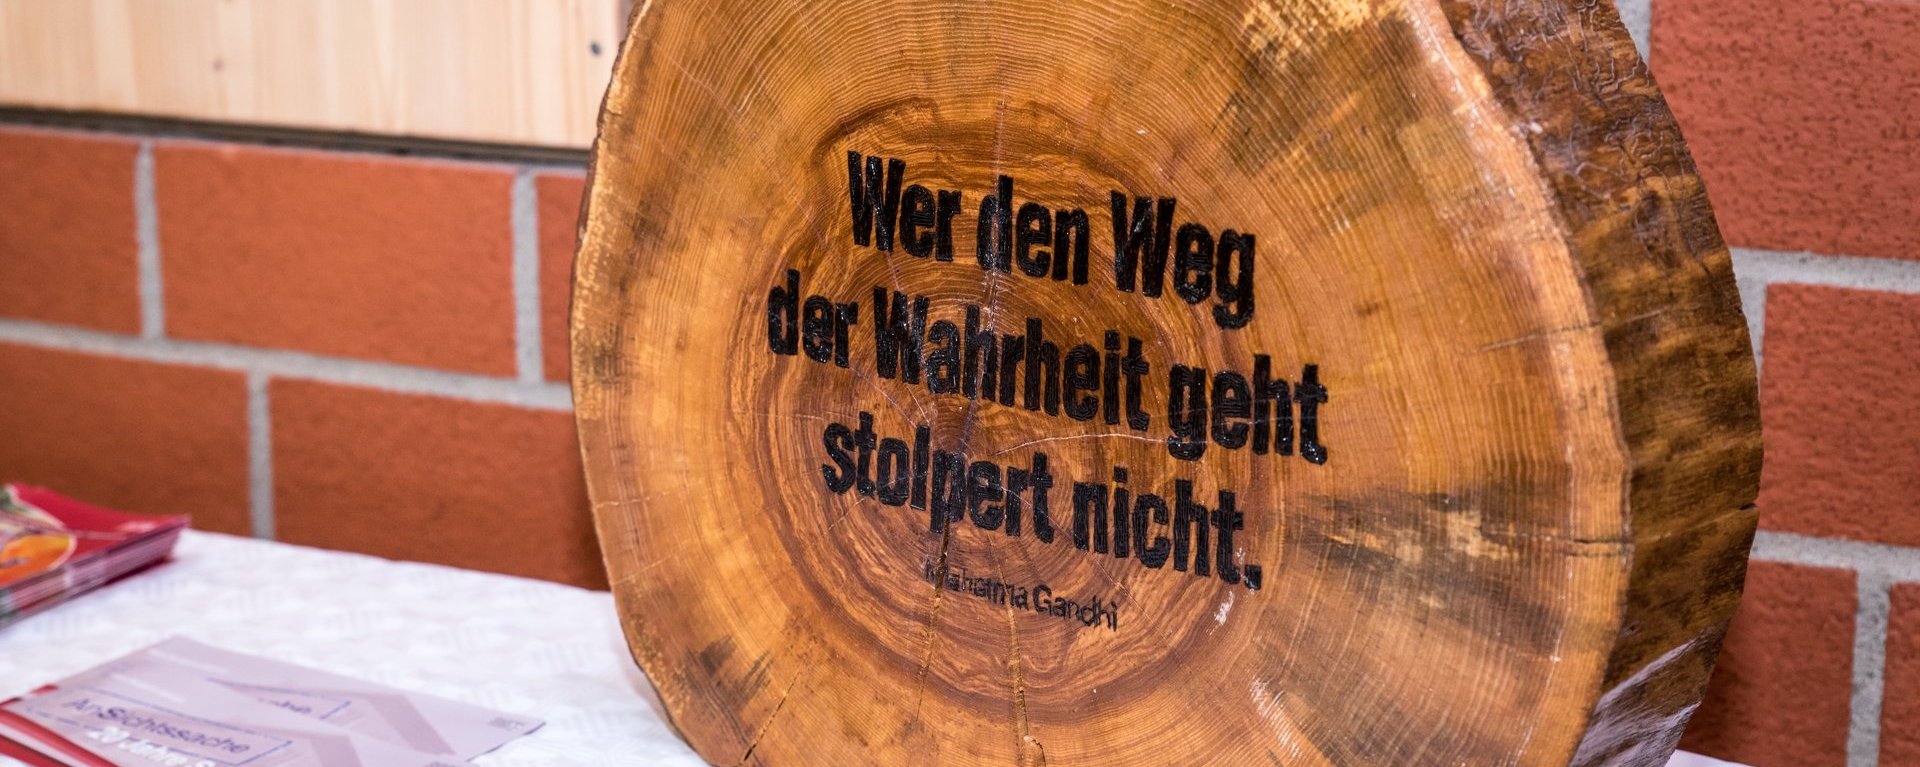 Holzstamm-Scheibe mit eingebranntem Spruch: "Wer den Weg der Wahrheit geht stolpert nicht - Mahetma Gandhi"